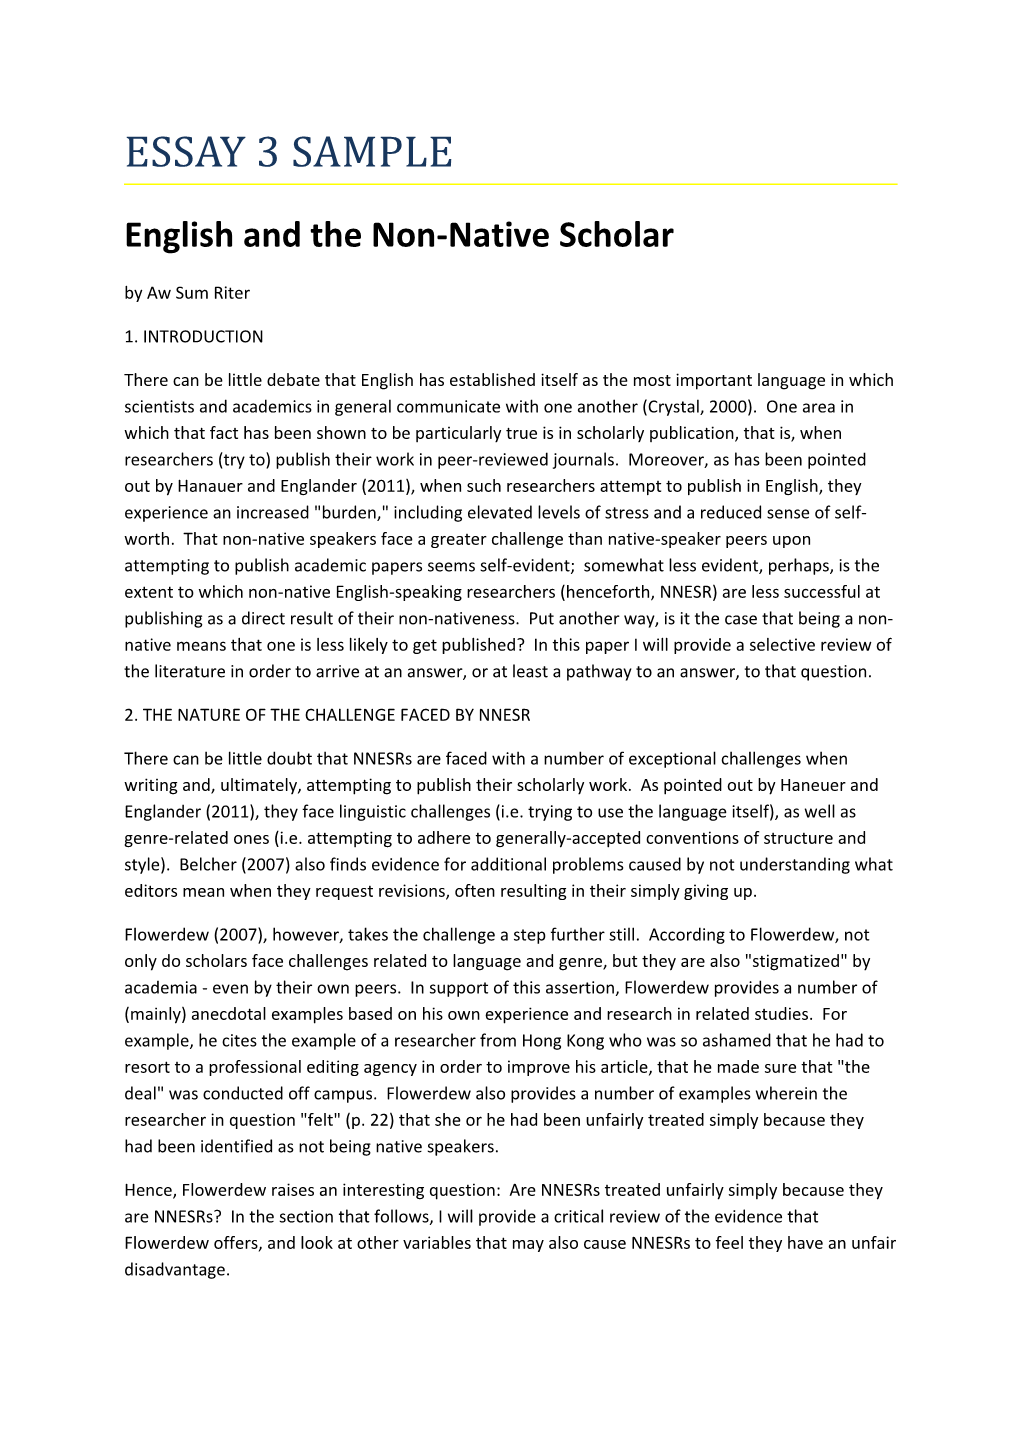 English and the Non-Native Scholar